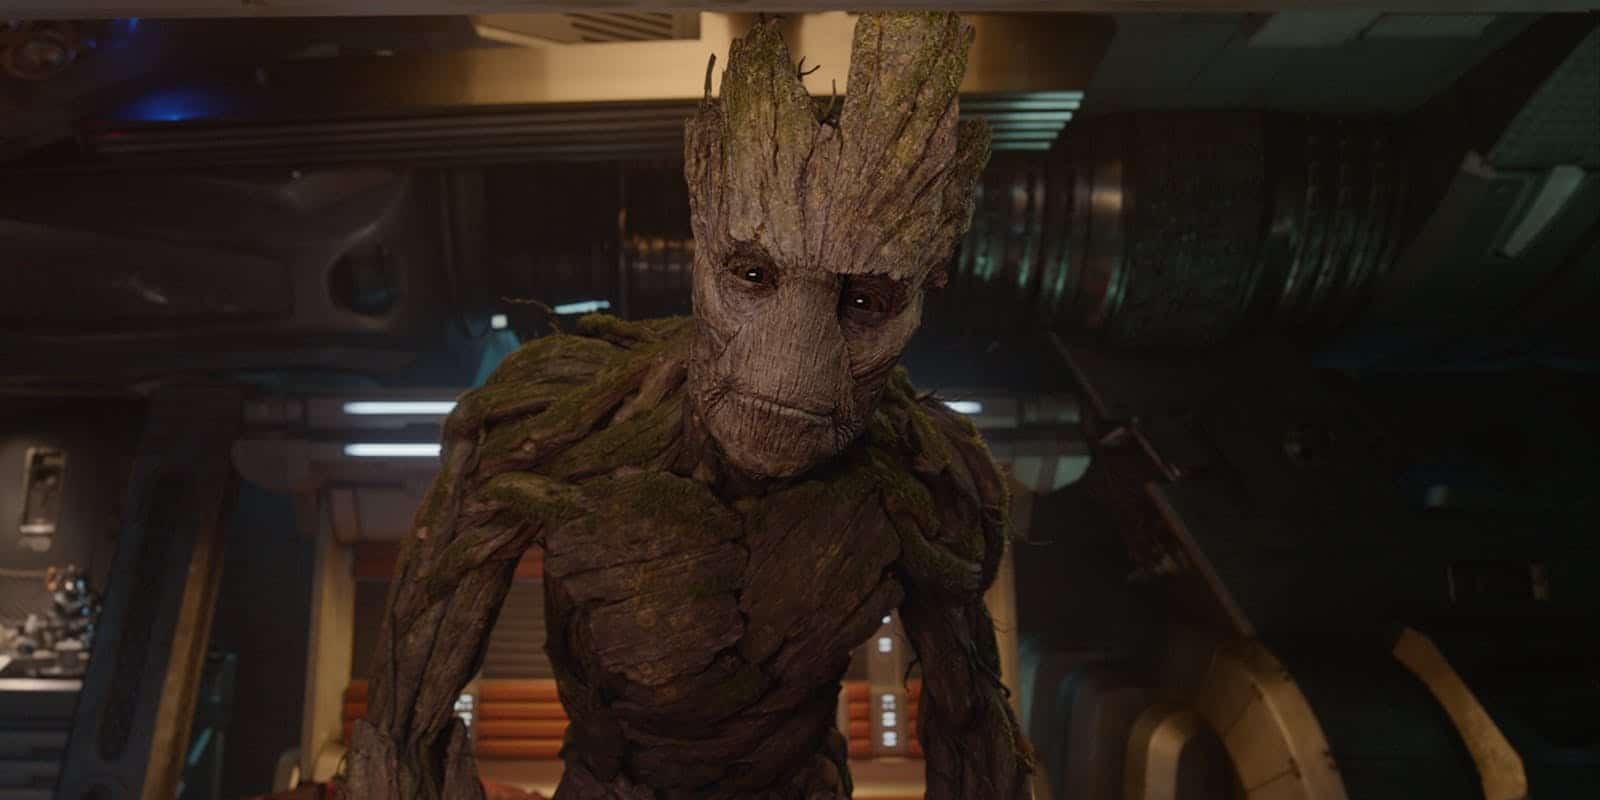 Choque de realidade: o Groot está morto (foi o James Gunn que disse!)